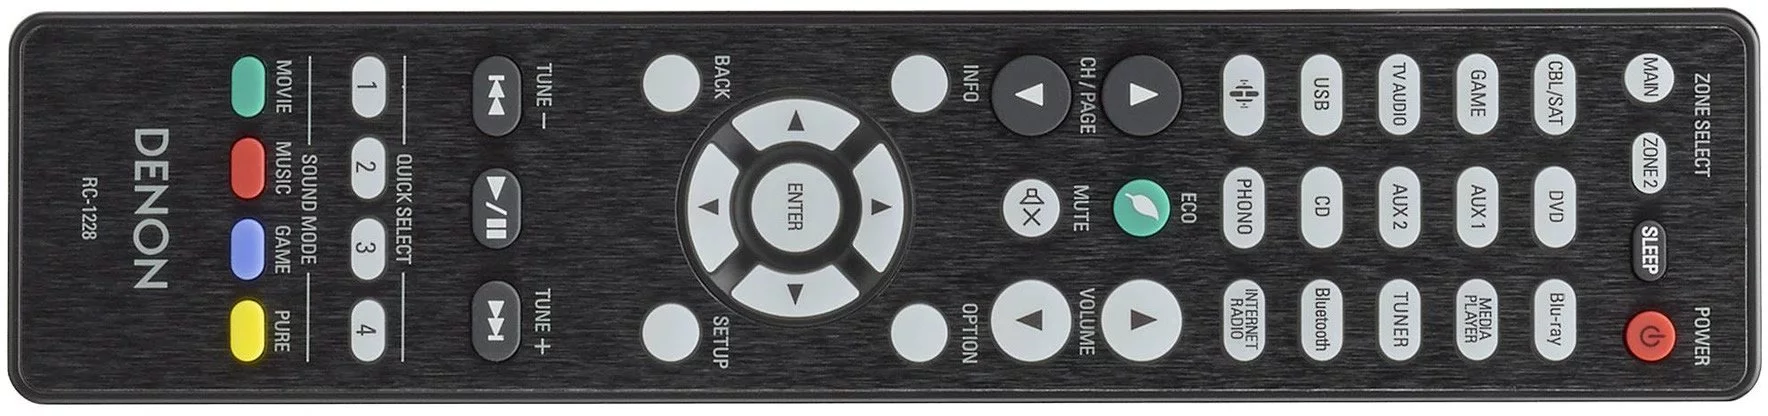 Denon AVR-X3500H remote